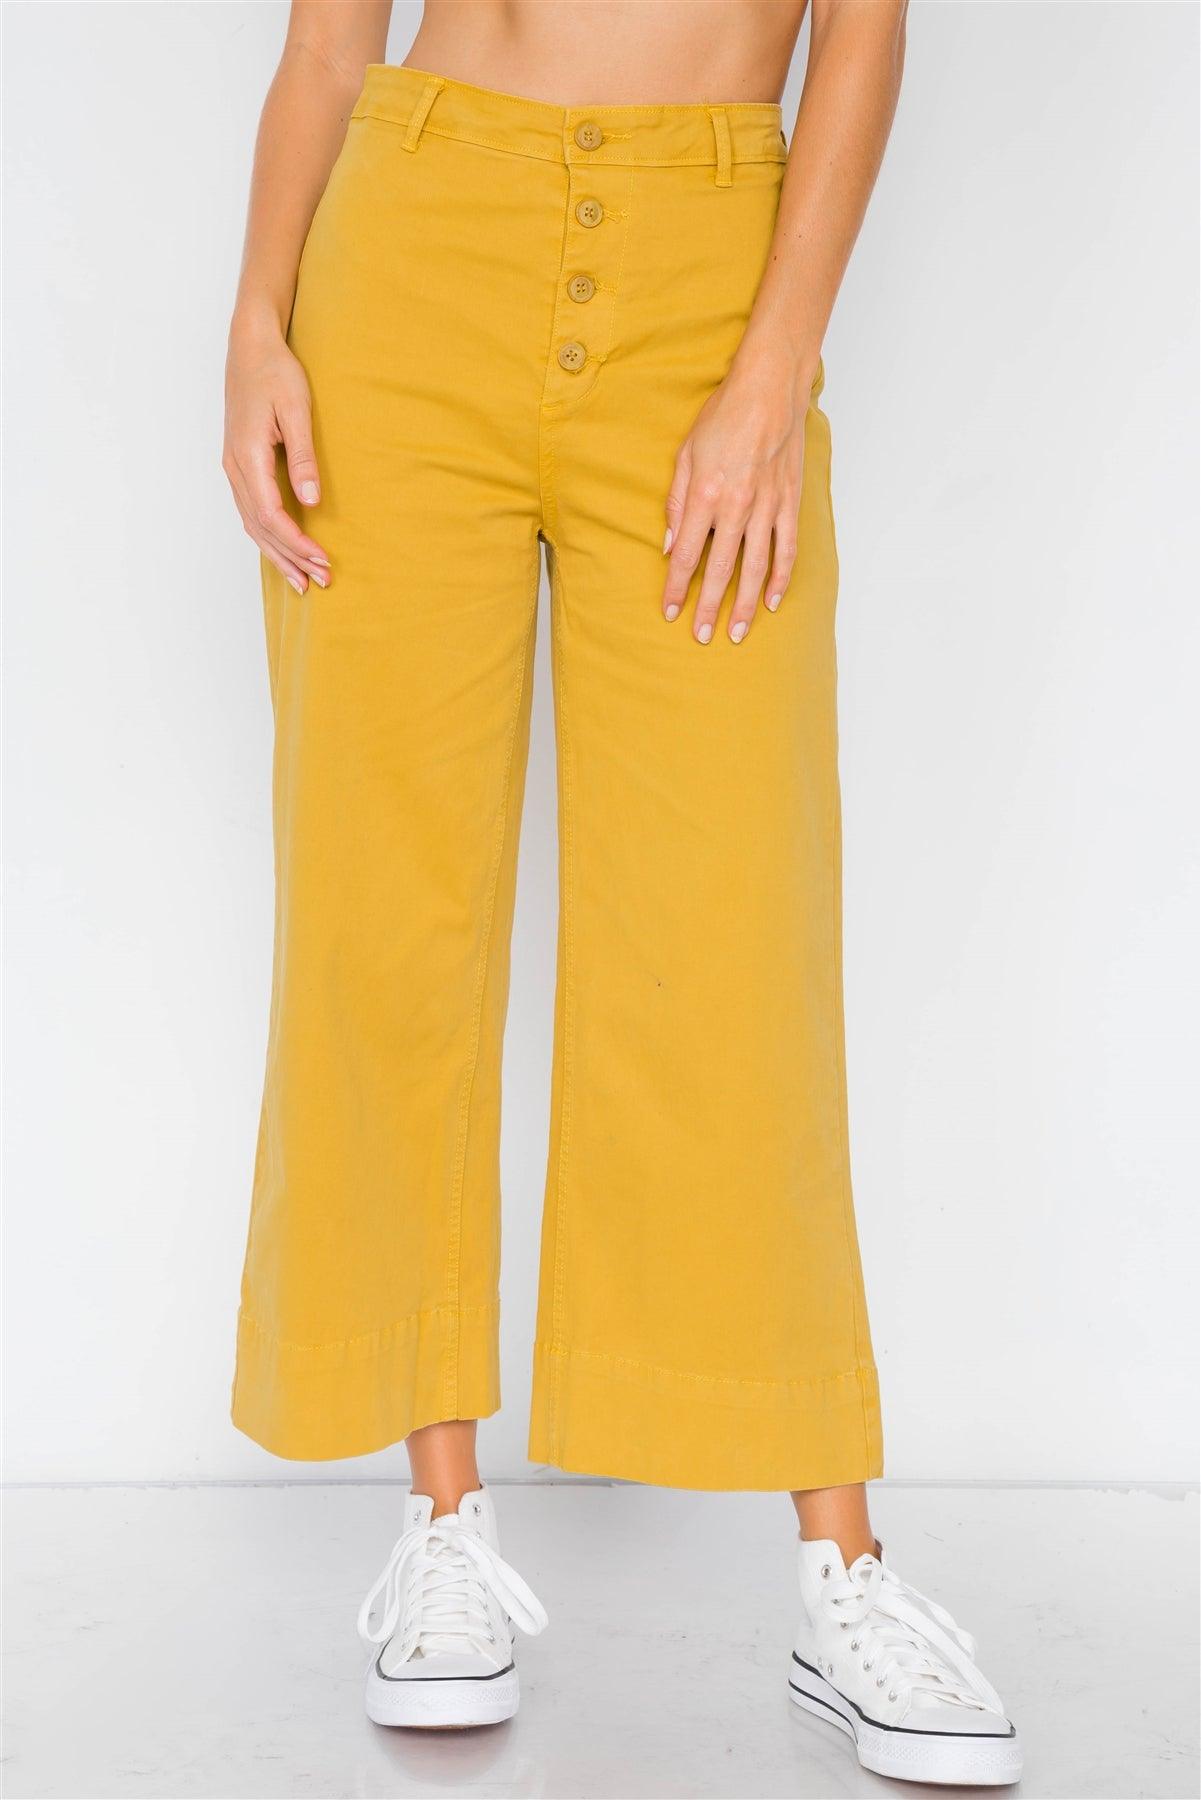 Mustard Yellow Hipster High Waist Gaucho Pants /3-2-1